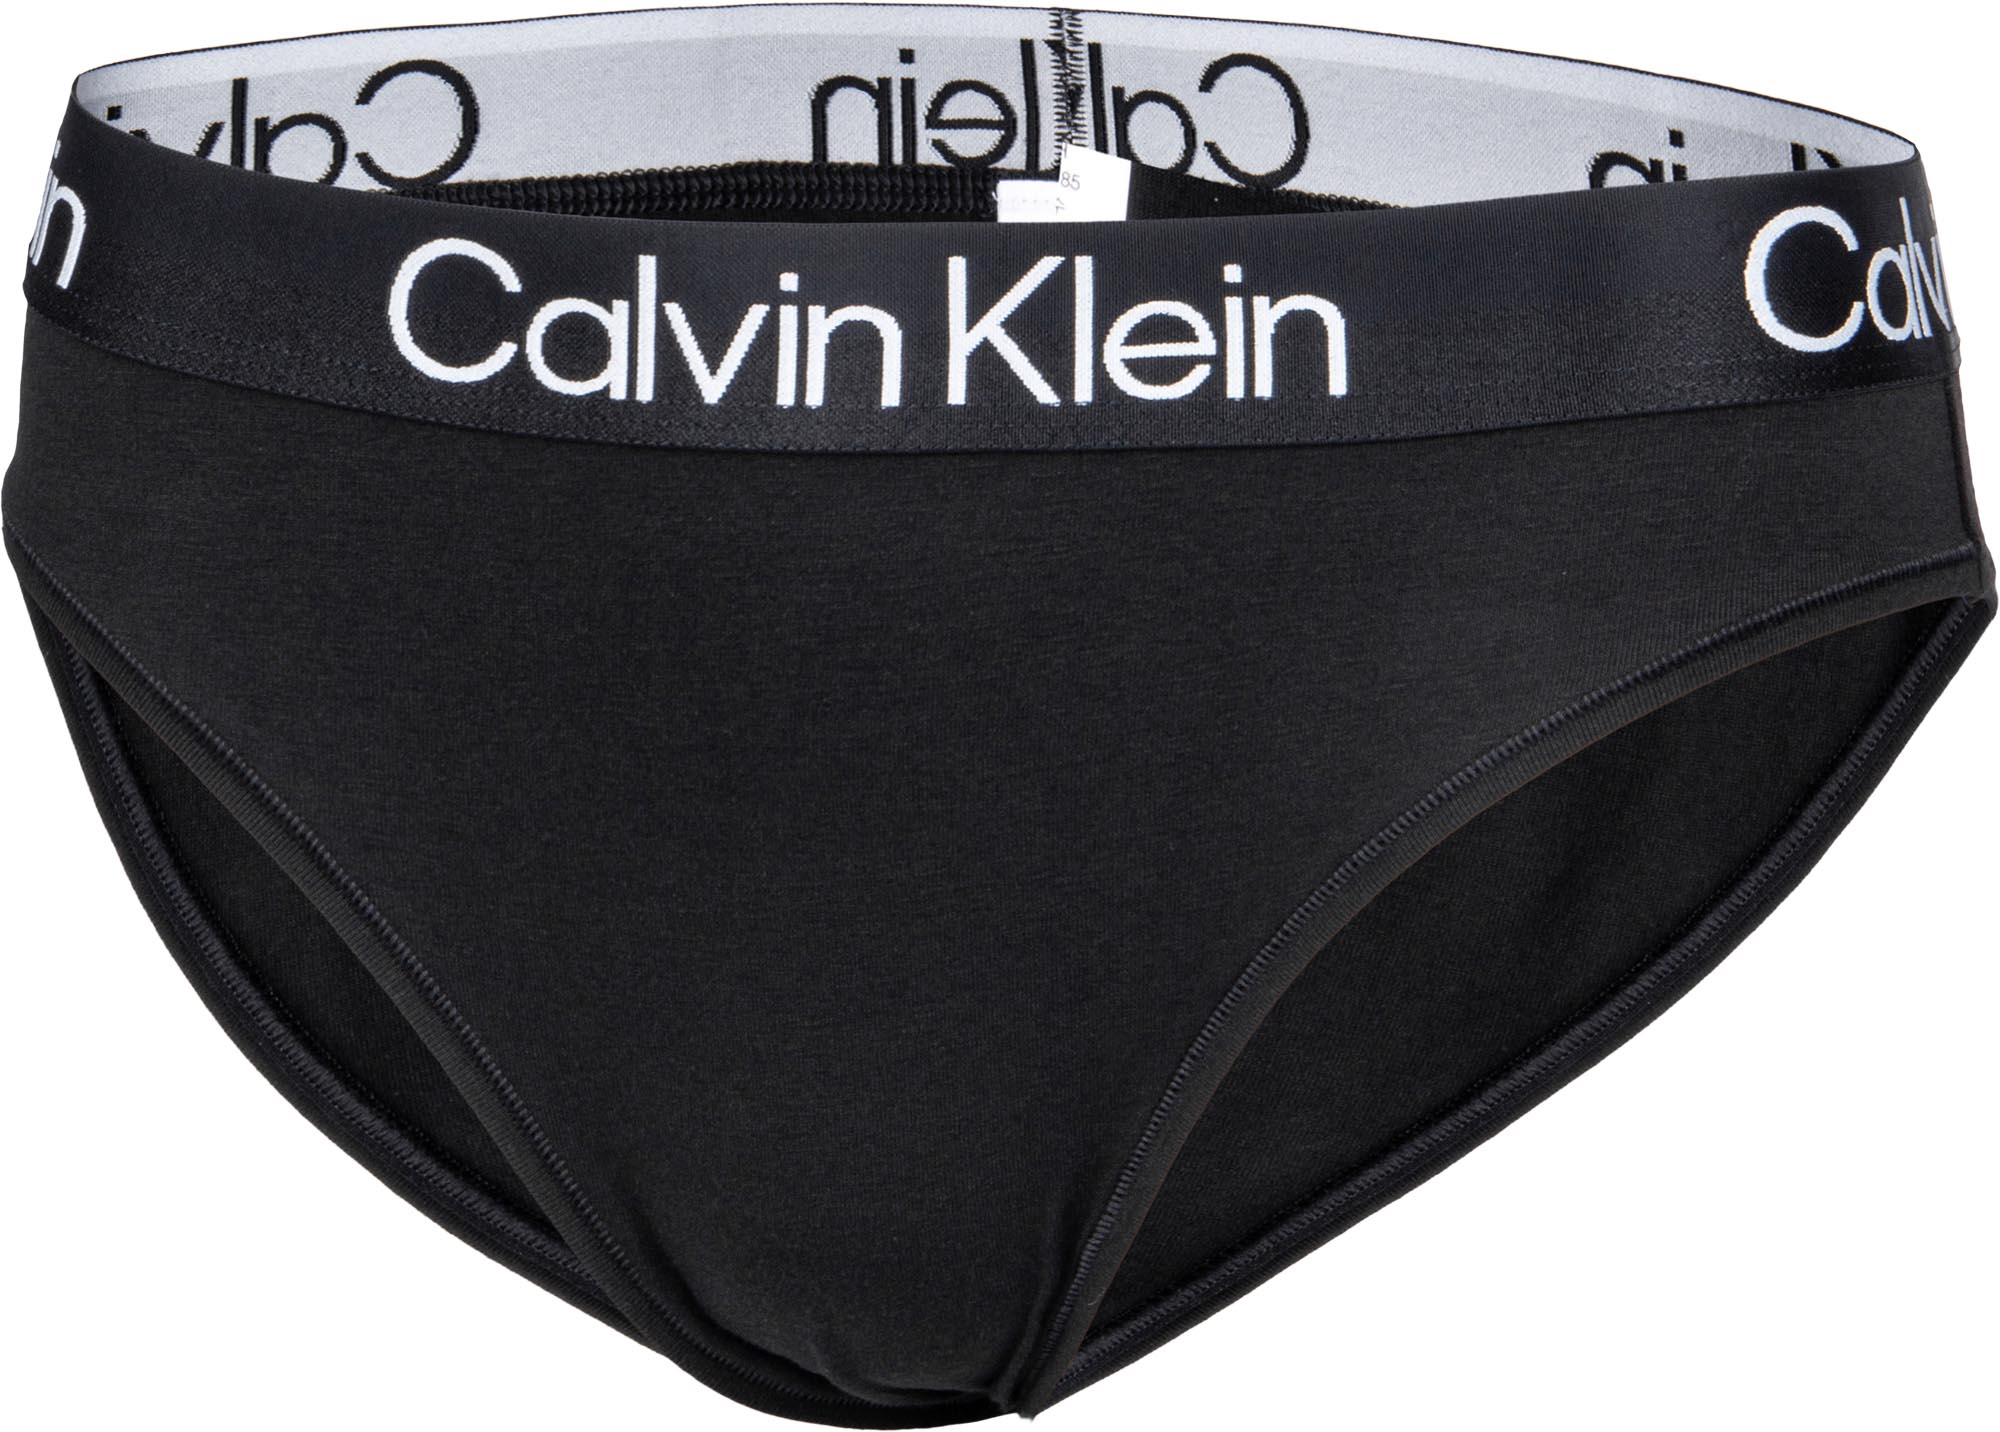 Calvin Klein CHEEKY BIKINI sportisimo.com